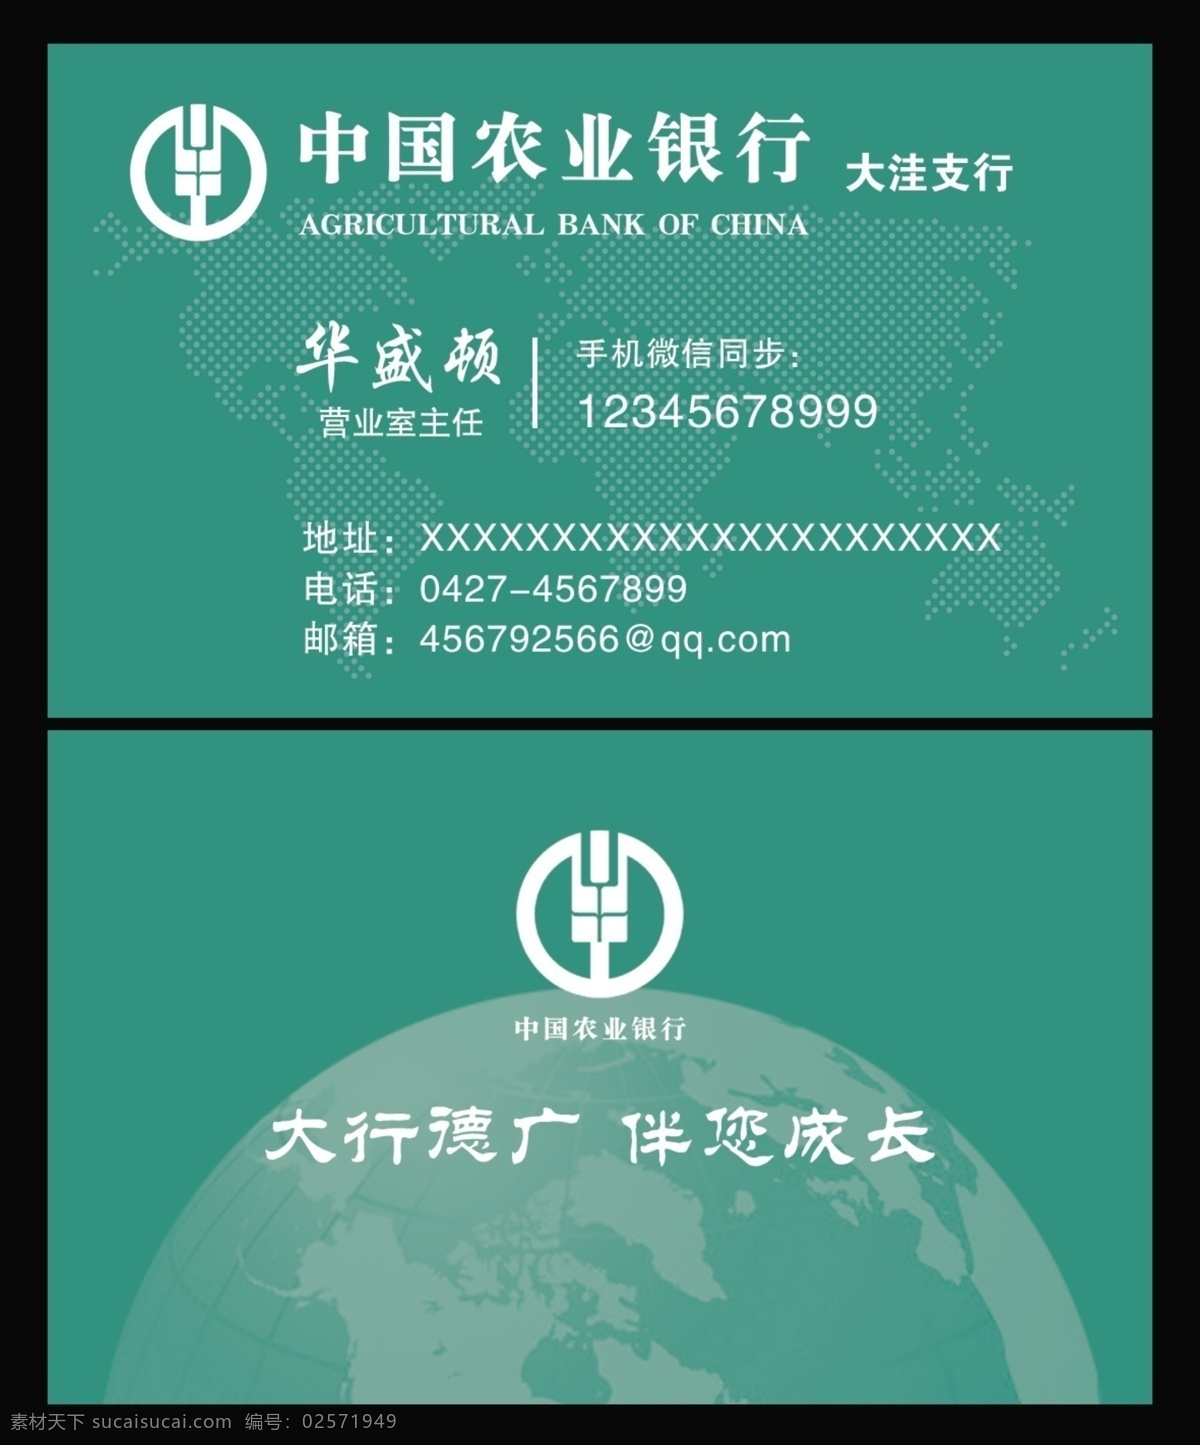 中国农业银行 名片 农业银行名片 农行 农行名片 农行标志 农业银行标志 世界地图背景 地球背景 名片卡片